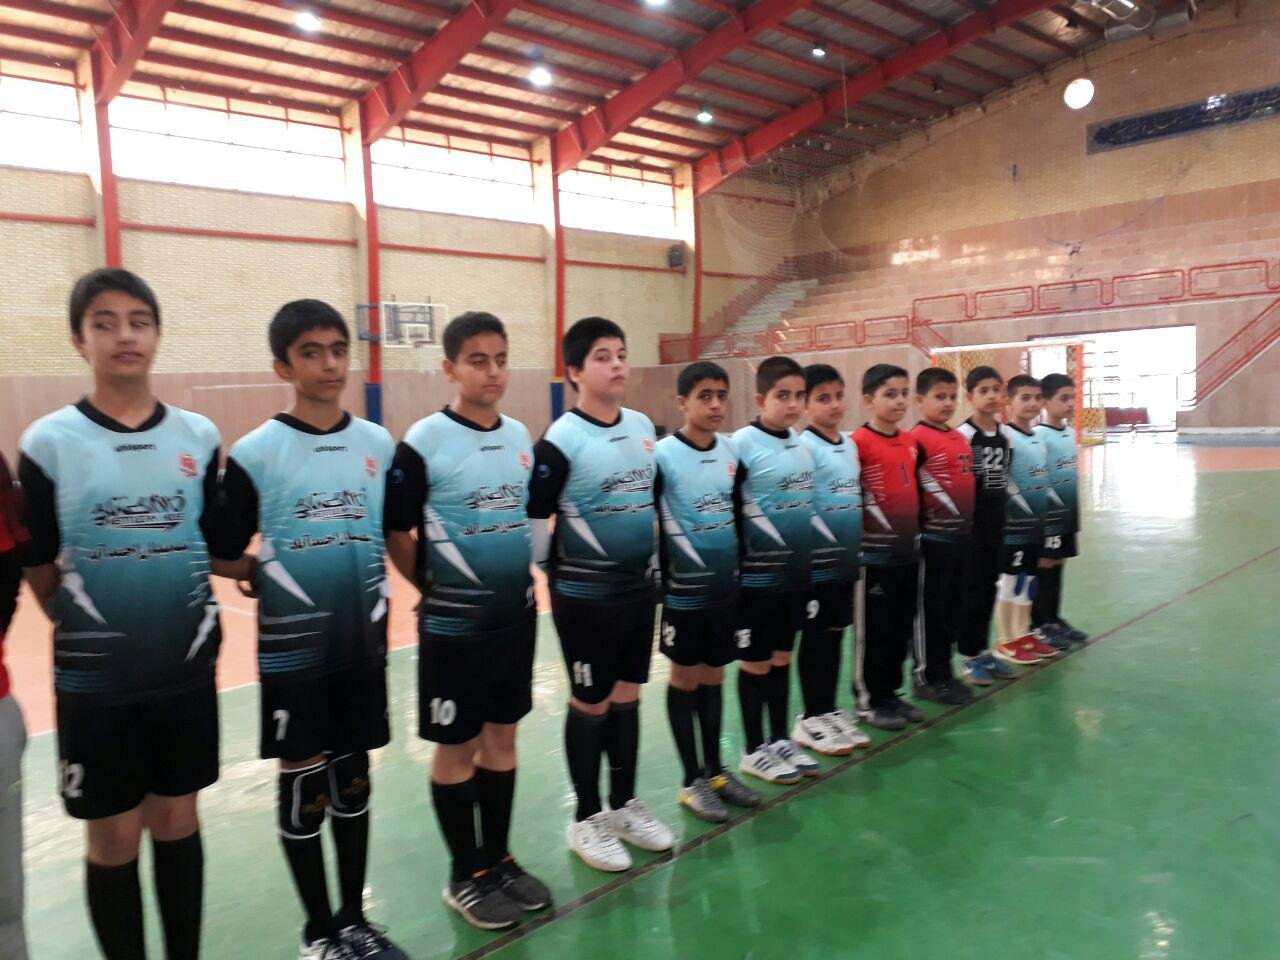 پایان مسابقات هندبال مدارس ناحیه ۶ اصفهان